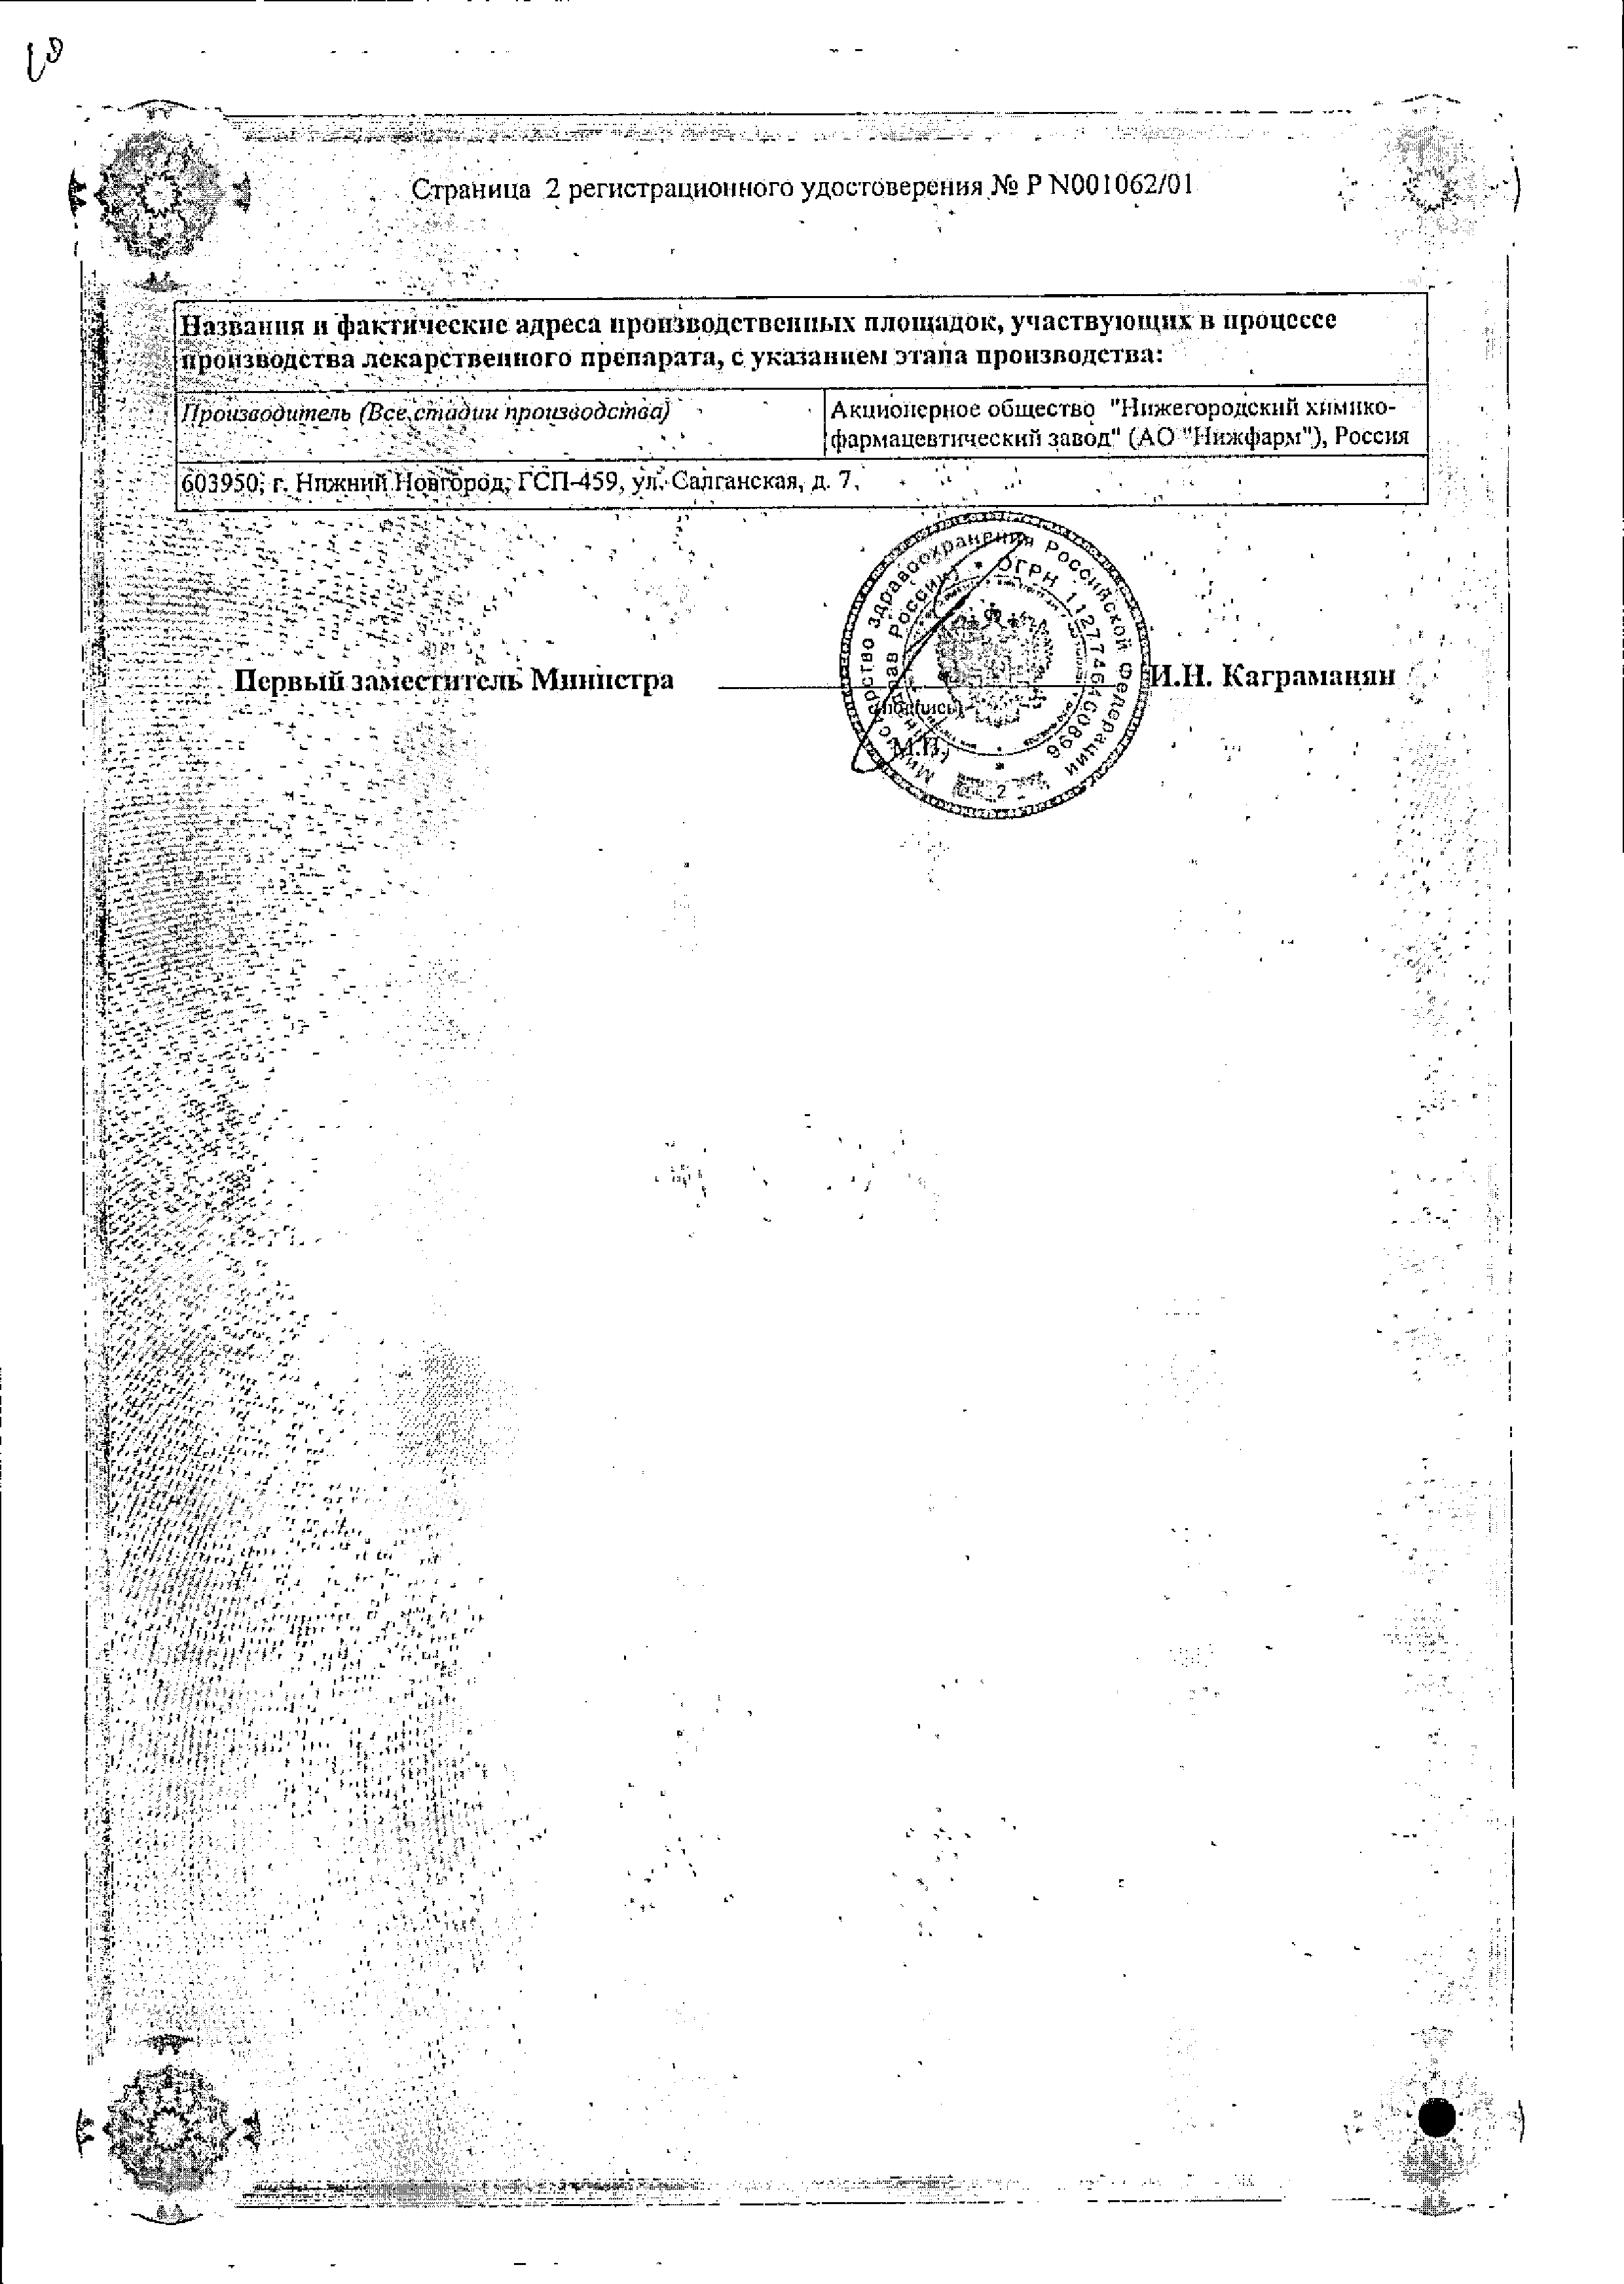 Осарбон сертификат